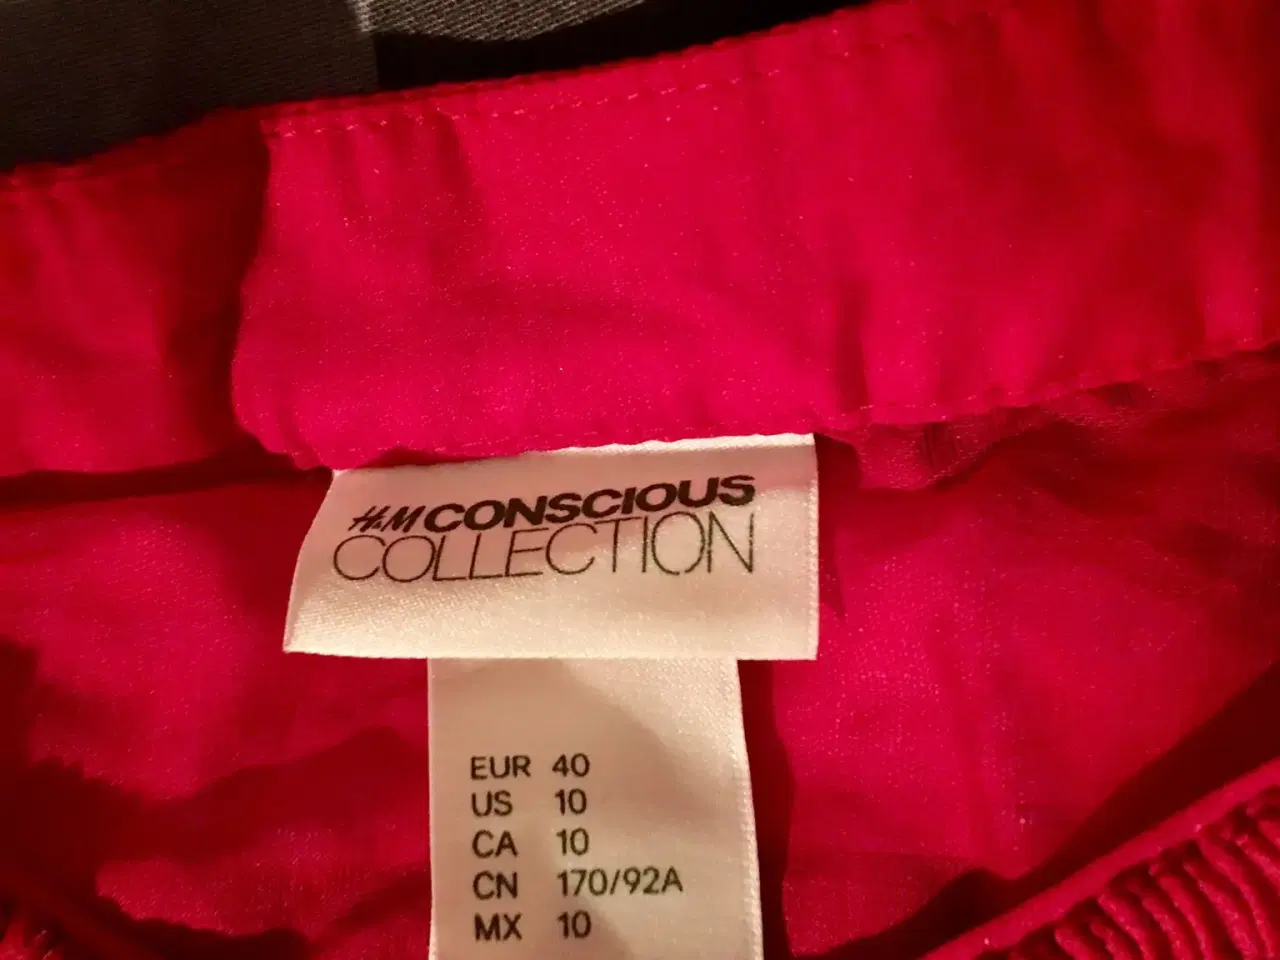 Billede 3 - Ubrugt rød bluse til salg